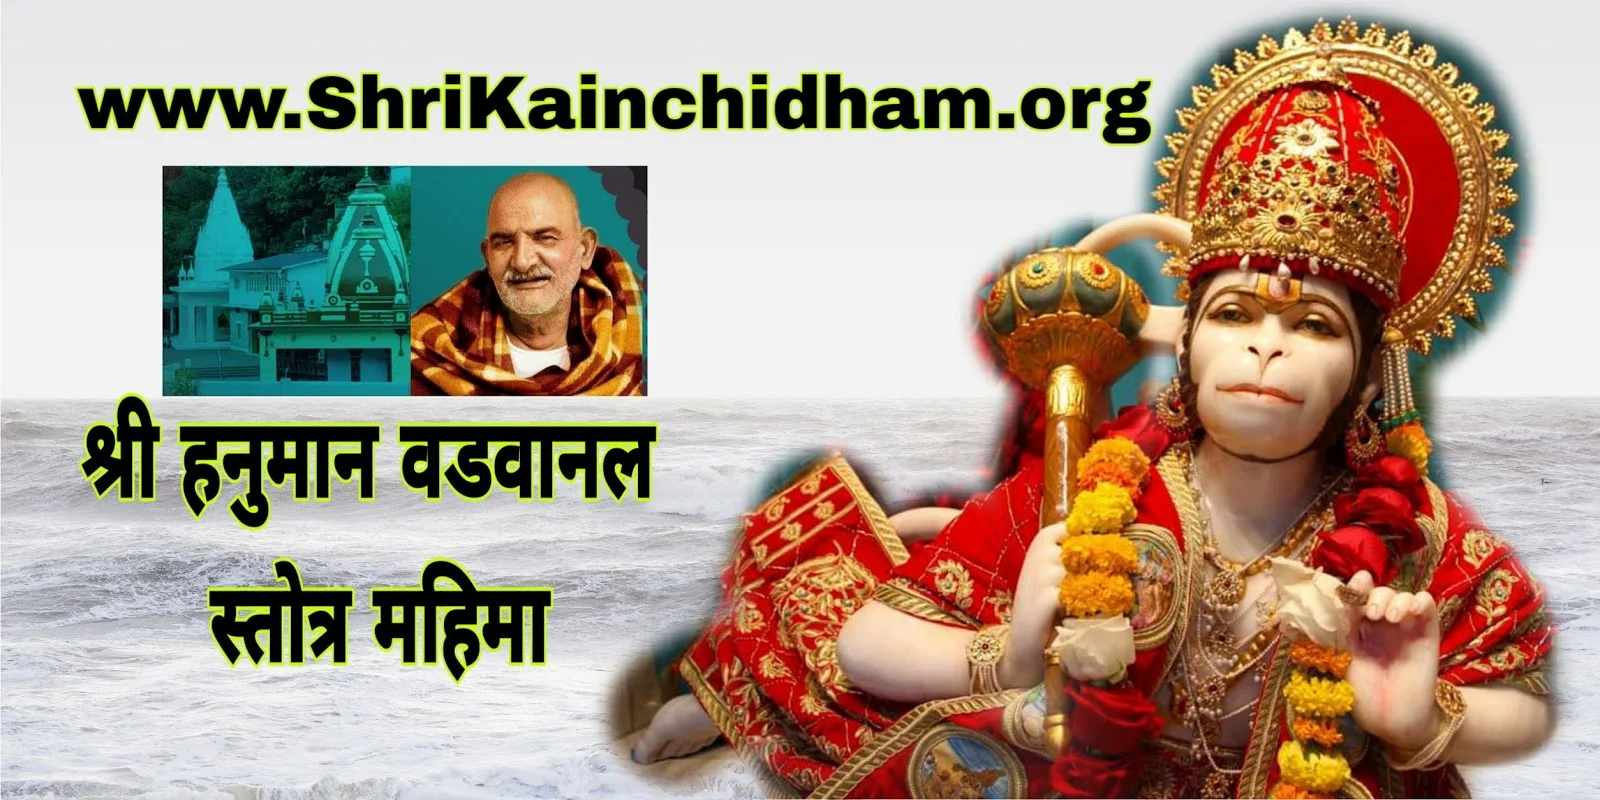 Hanuman Vadvanal Stotra Mahima - Shri Kainchi Dham